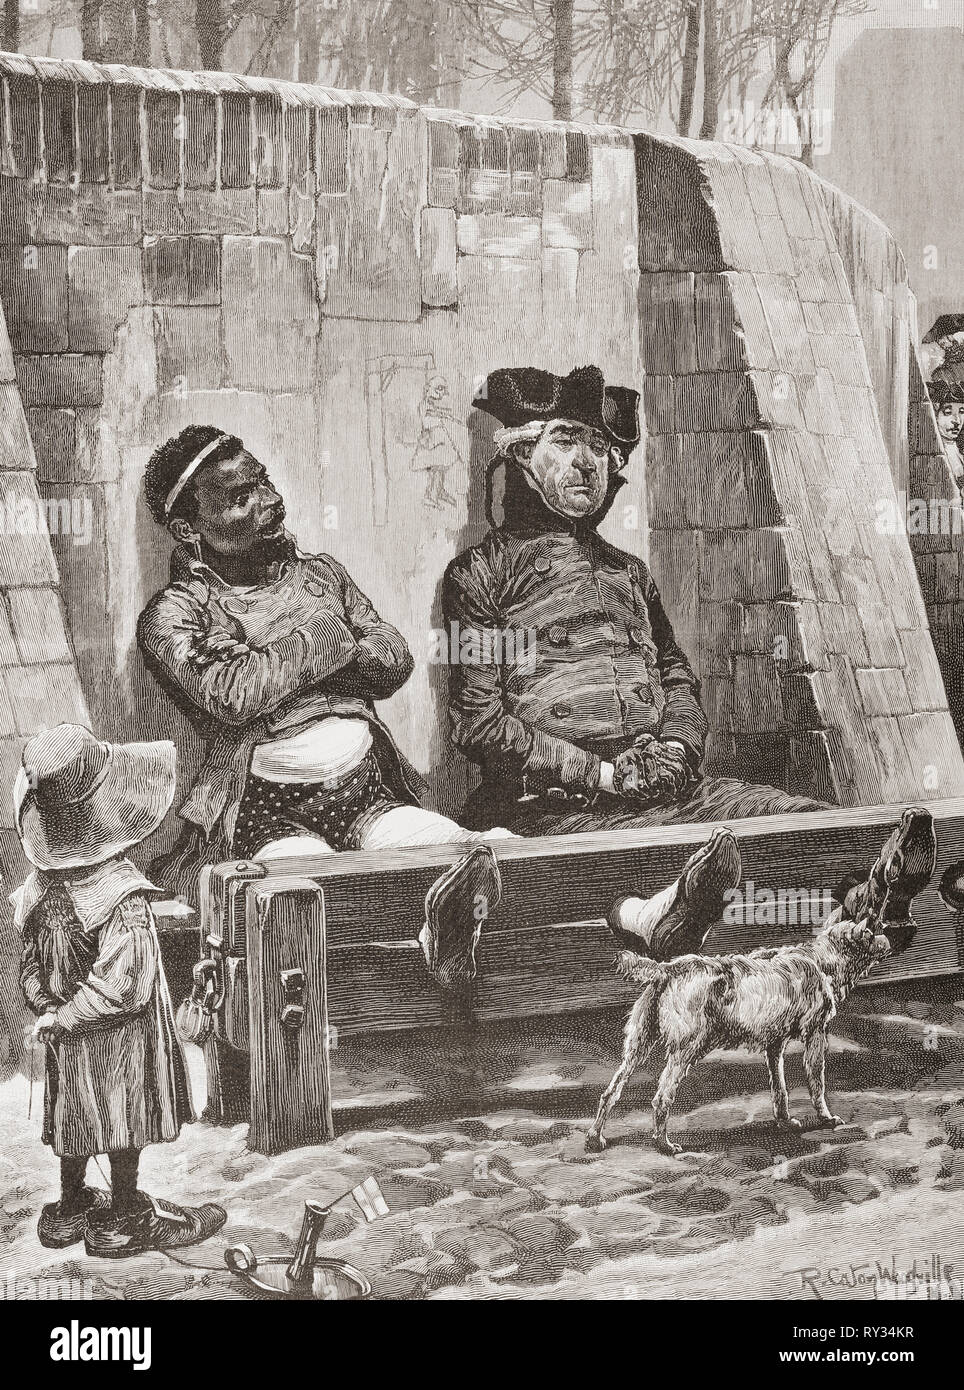 Dos delincuentes en las existencias. Desde Ilustracion artistica, publicado el 1887. Foto de stock